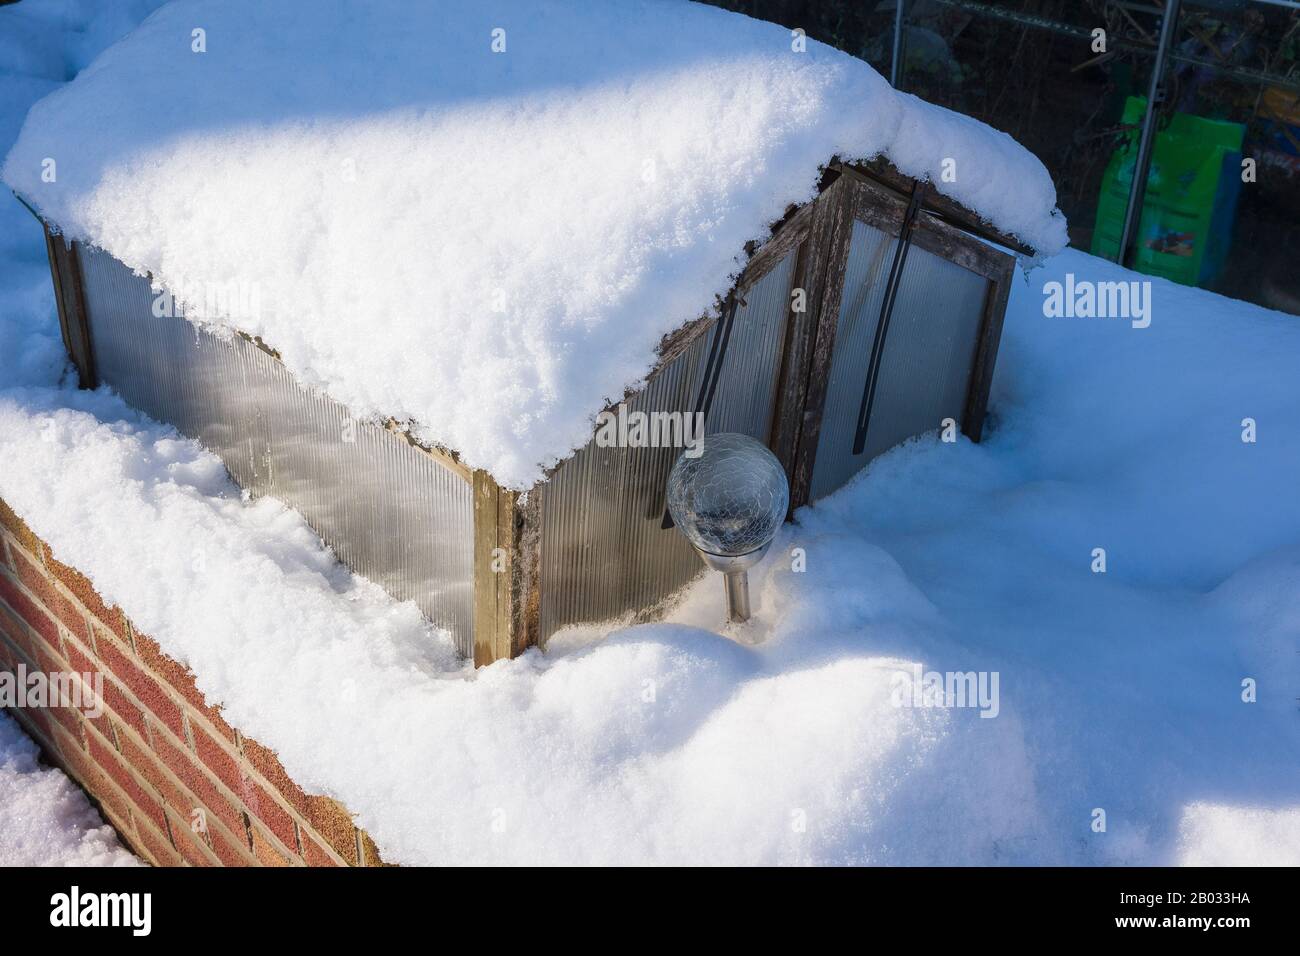 La neve aggiunge protezione termica ad un telaio freddo posto su una piantatrice in mattoni sopraelevata in un giardino inglese in inverno Foto Stock